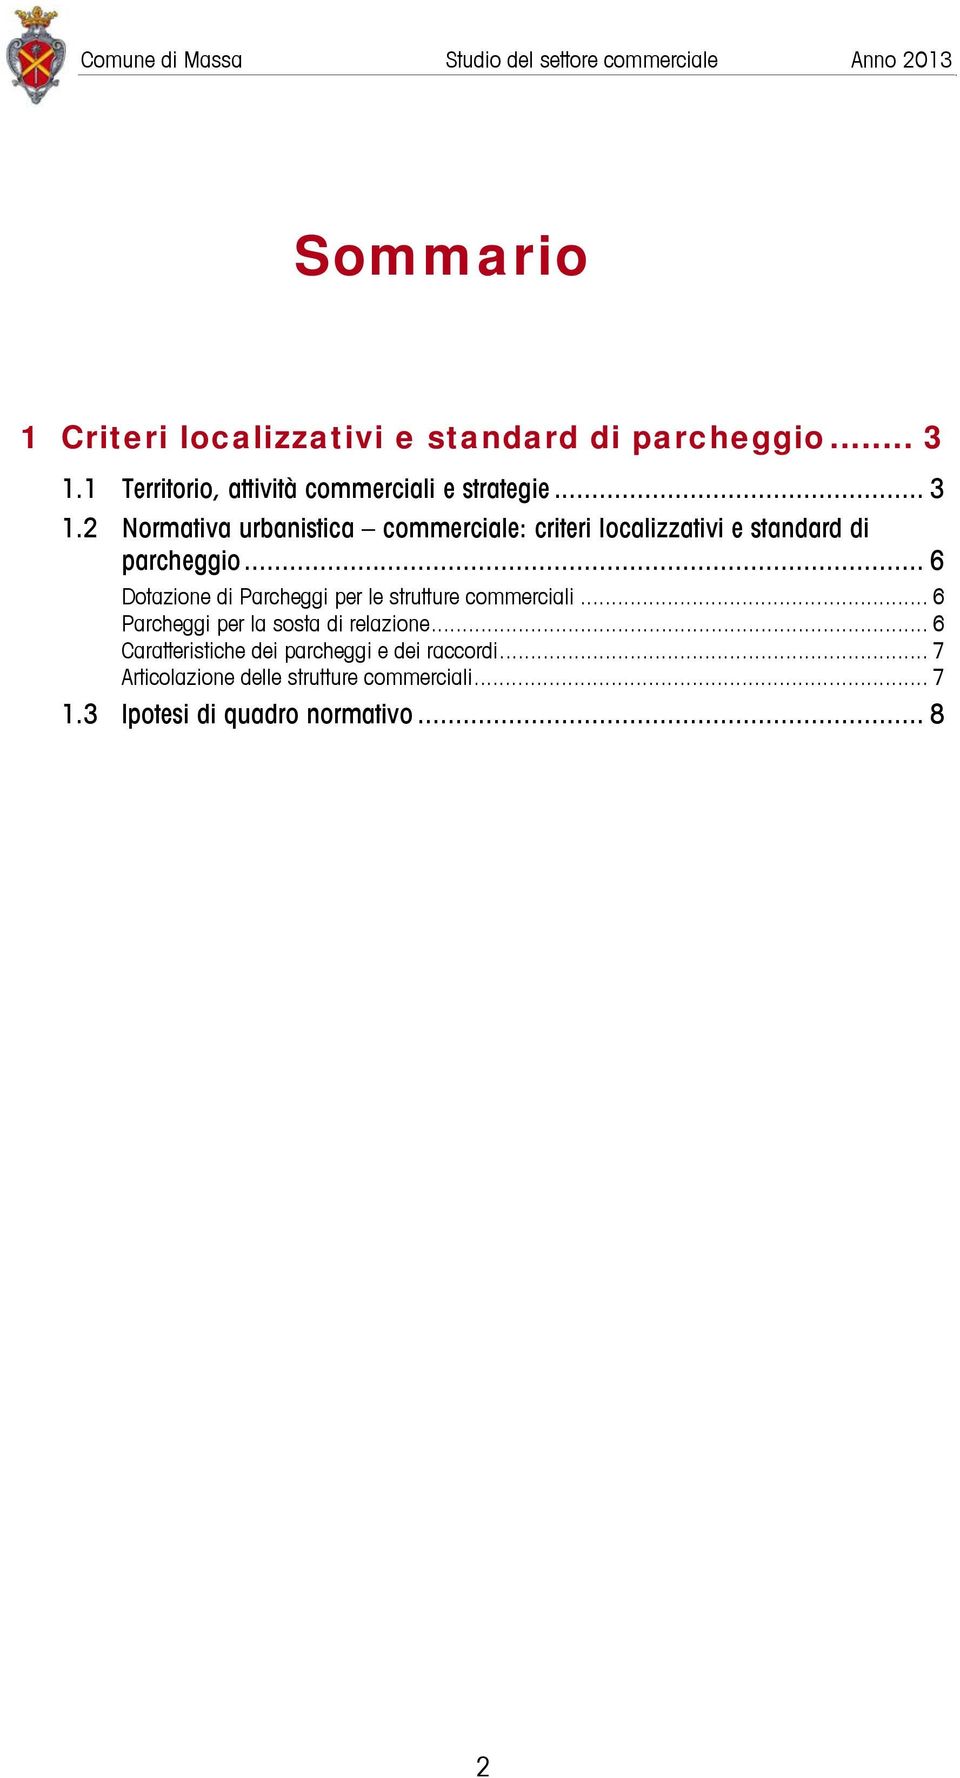 2 Normativa urbanistica commerciale: criteri localizzativi e standard di parcheggio.